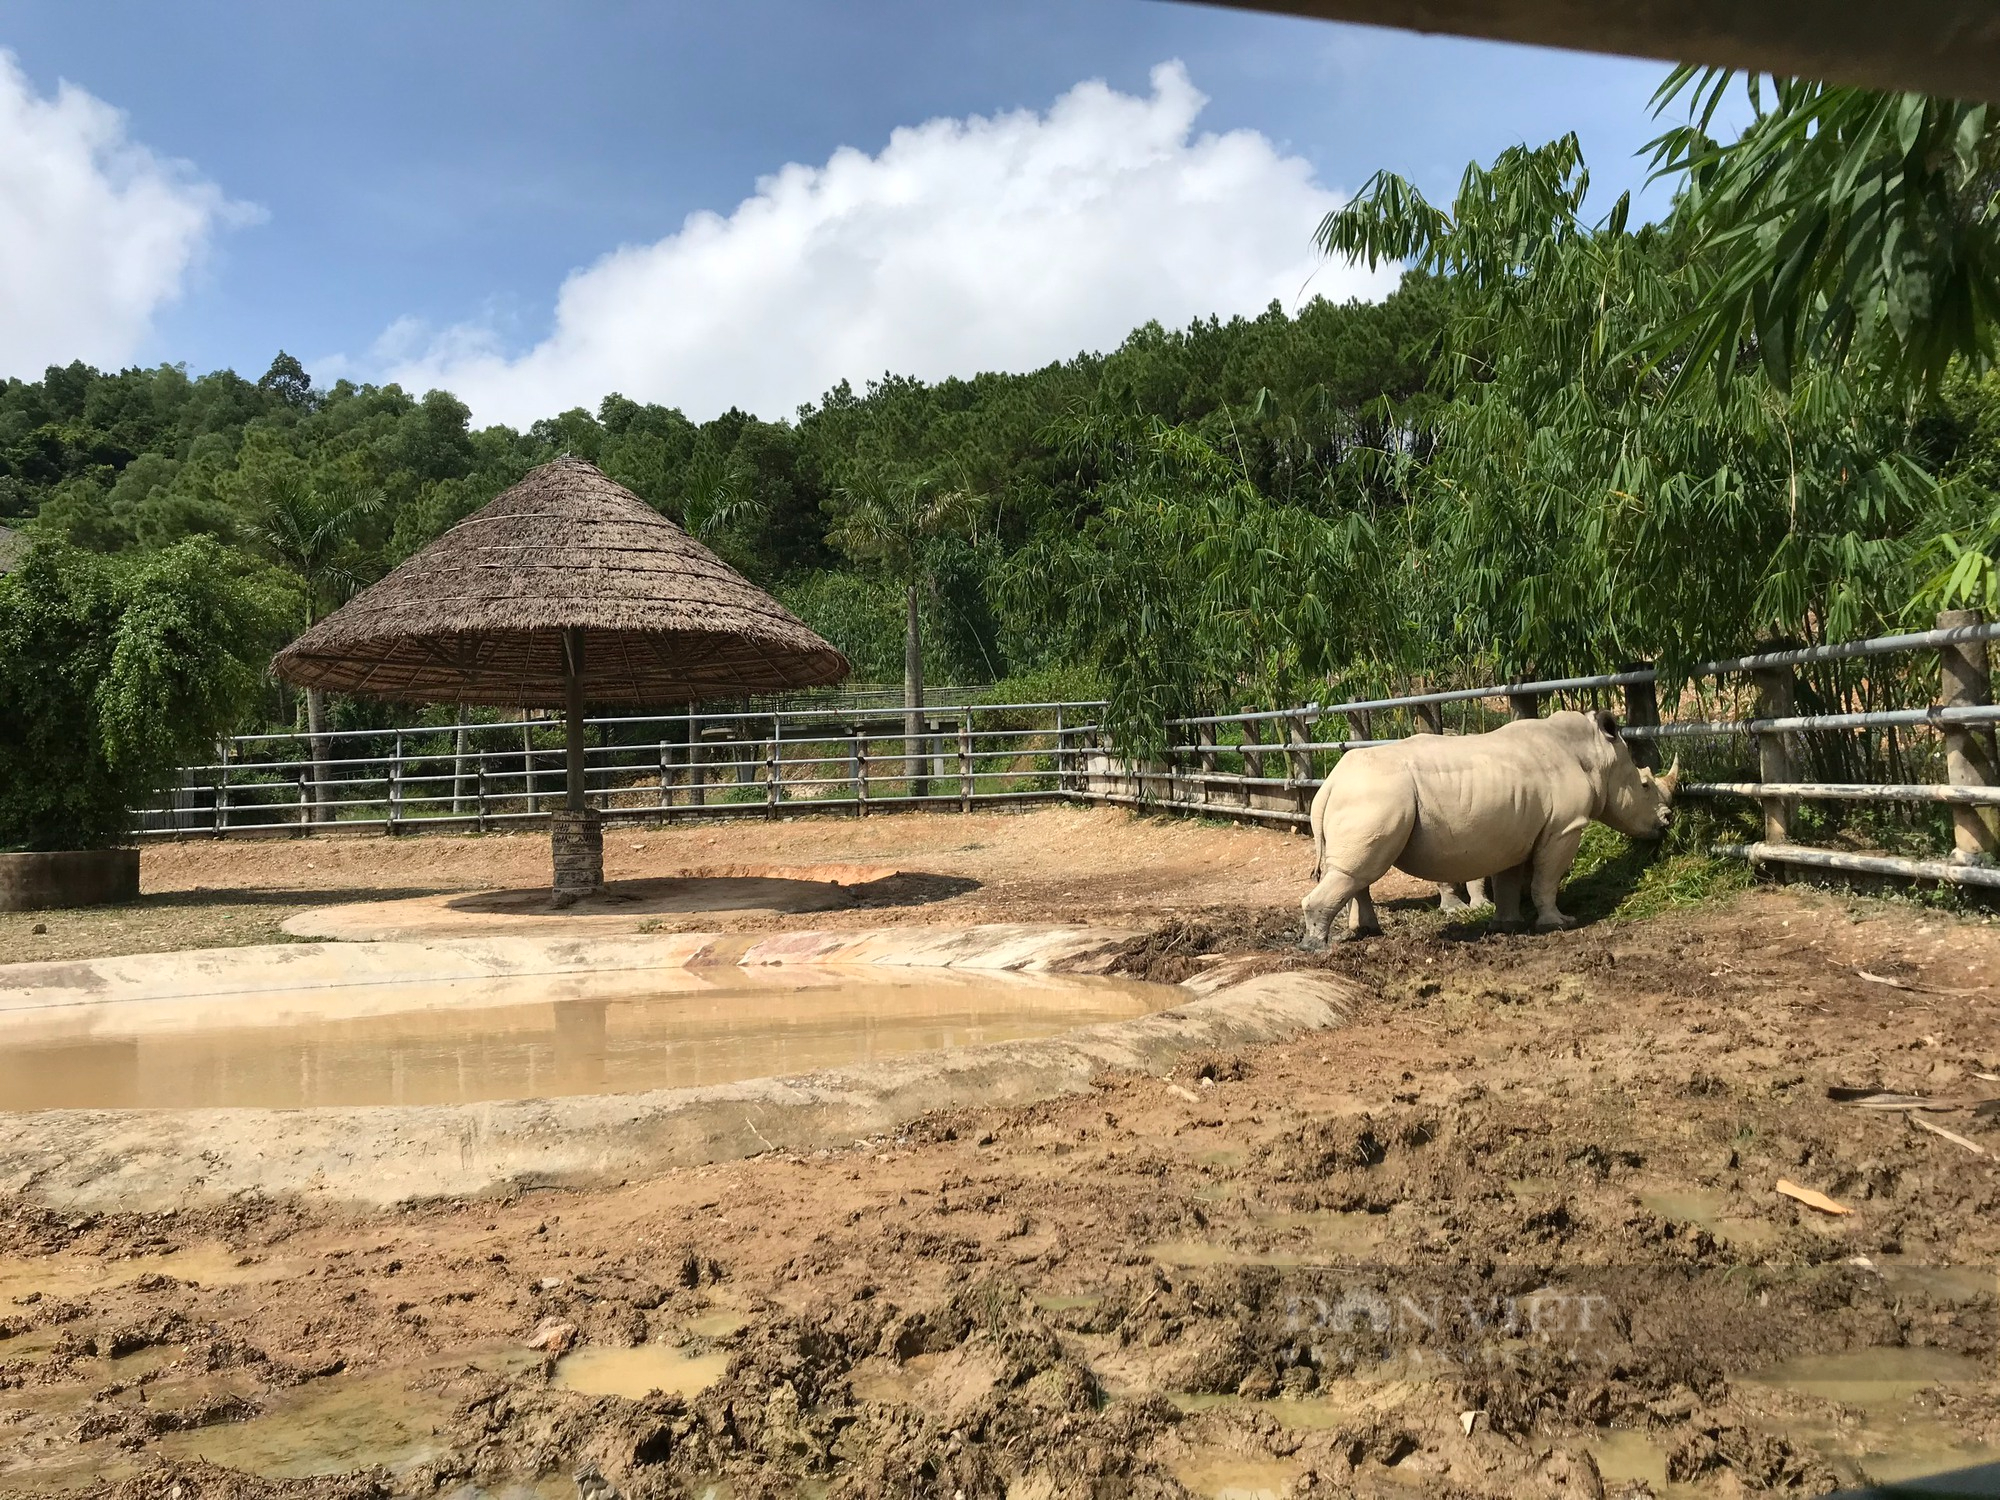 Cận cảnh cuộc sống của những chú tê giác 2 sừng đang được nuôi tại Nghệ An - Ảnh 9.